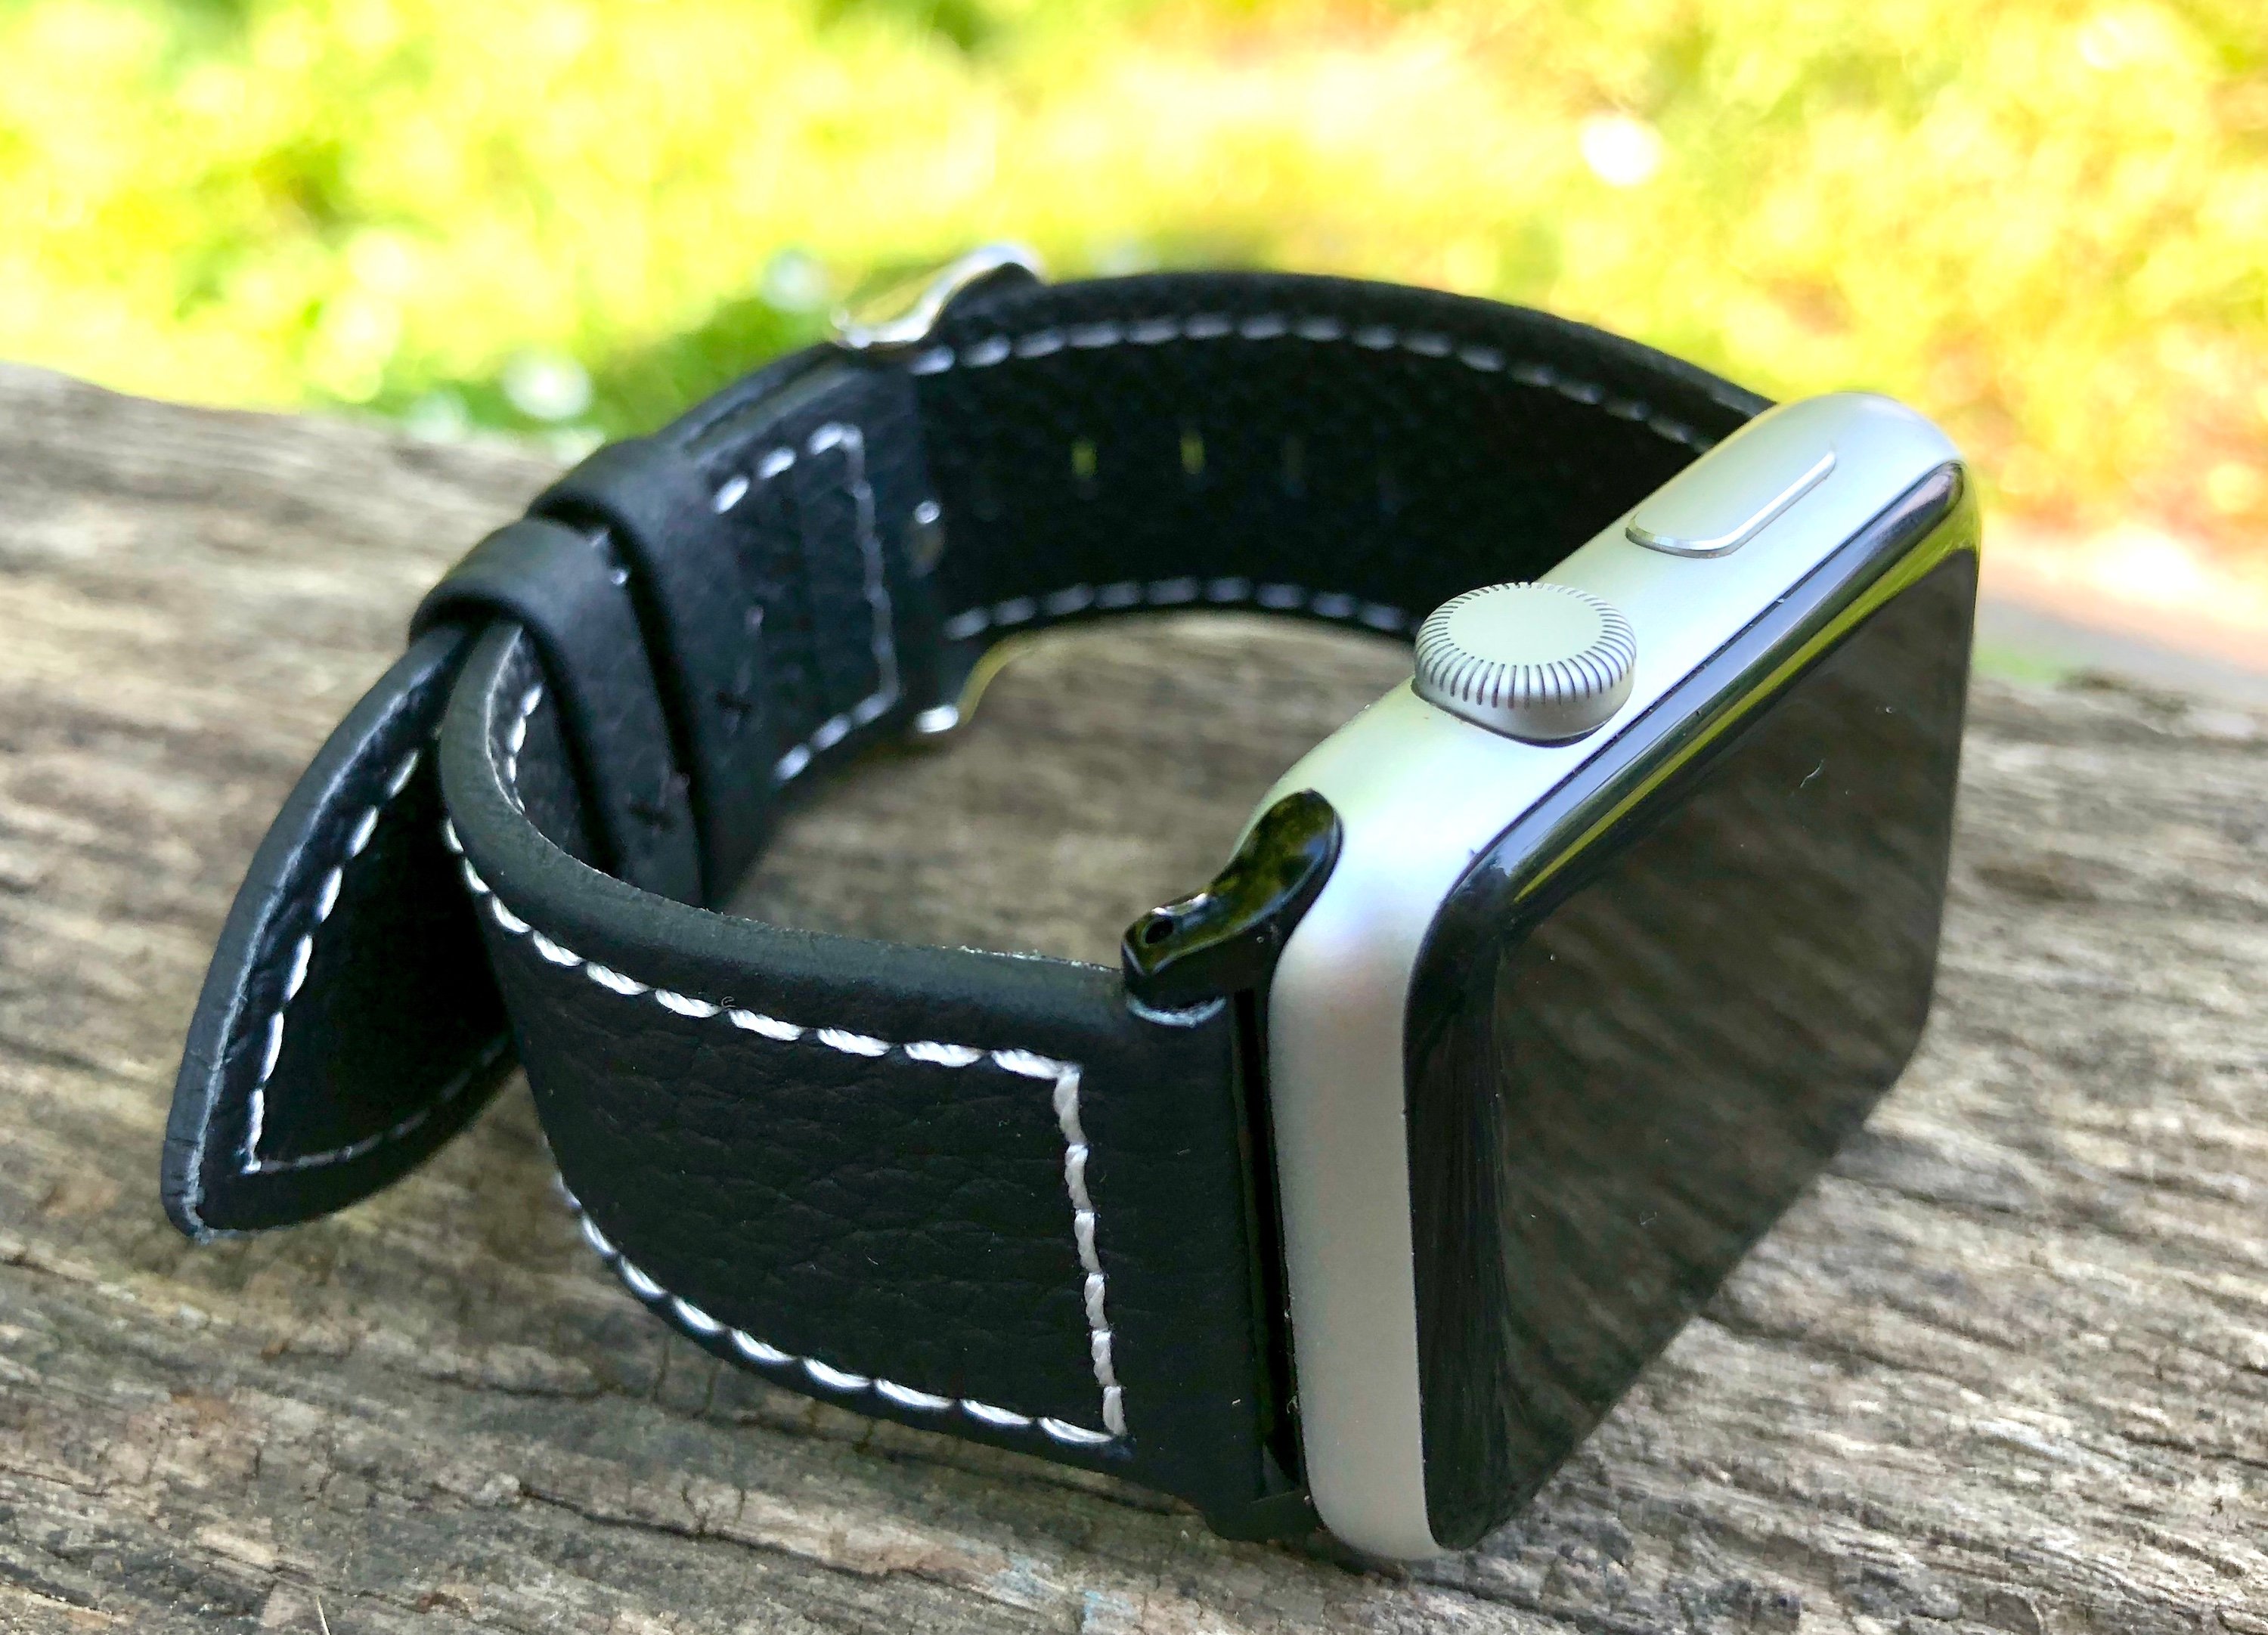 Test (sur 6 mois) du bracelet cuir Fullmosa pour Apple Watch